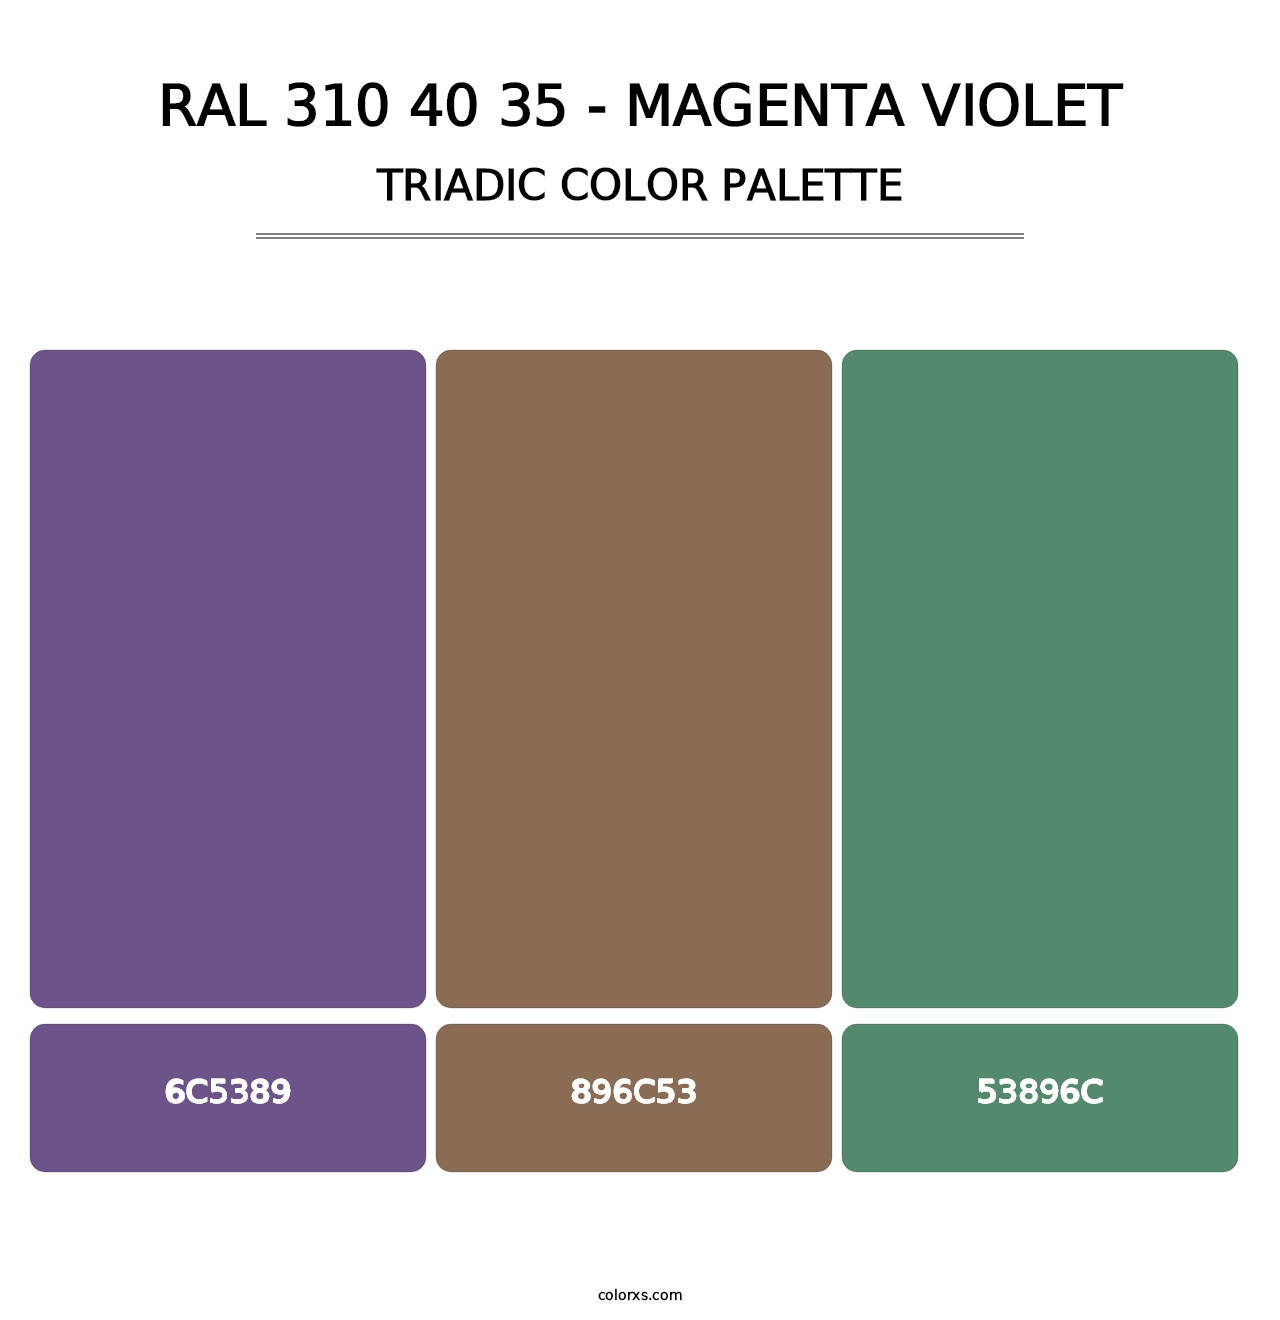 RAL 310 40 35 - Magenta Violet - Triadic Color Palette